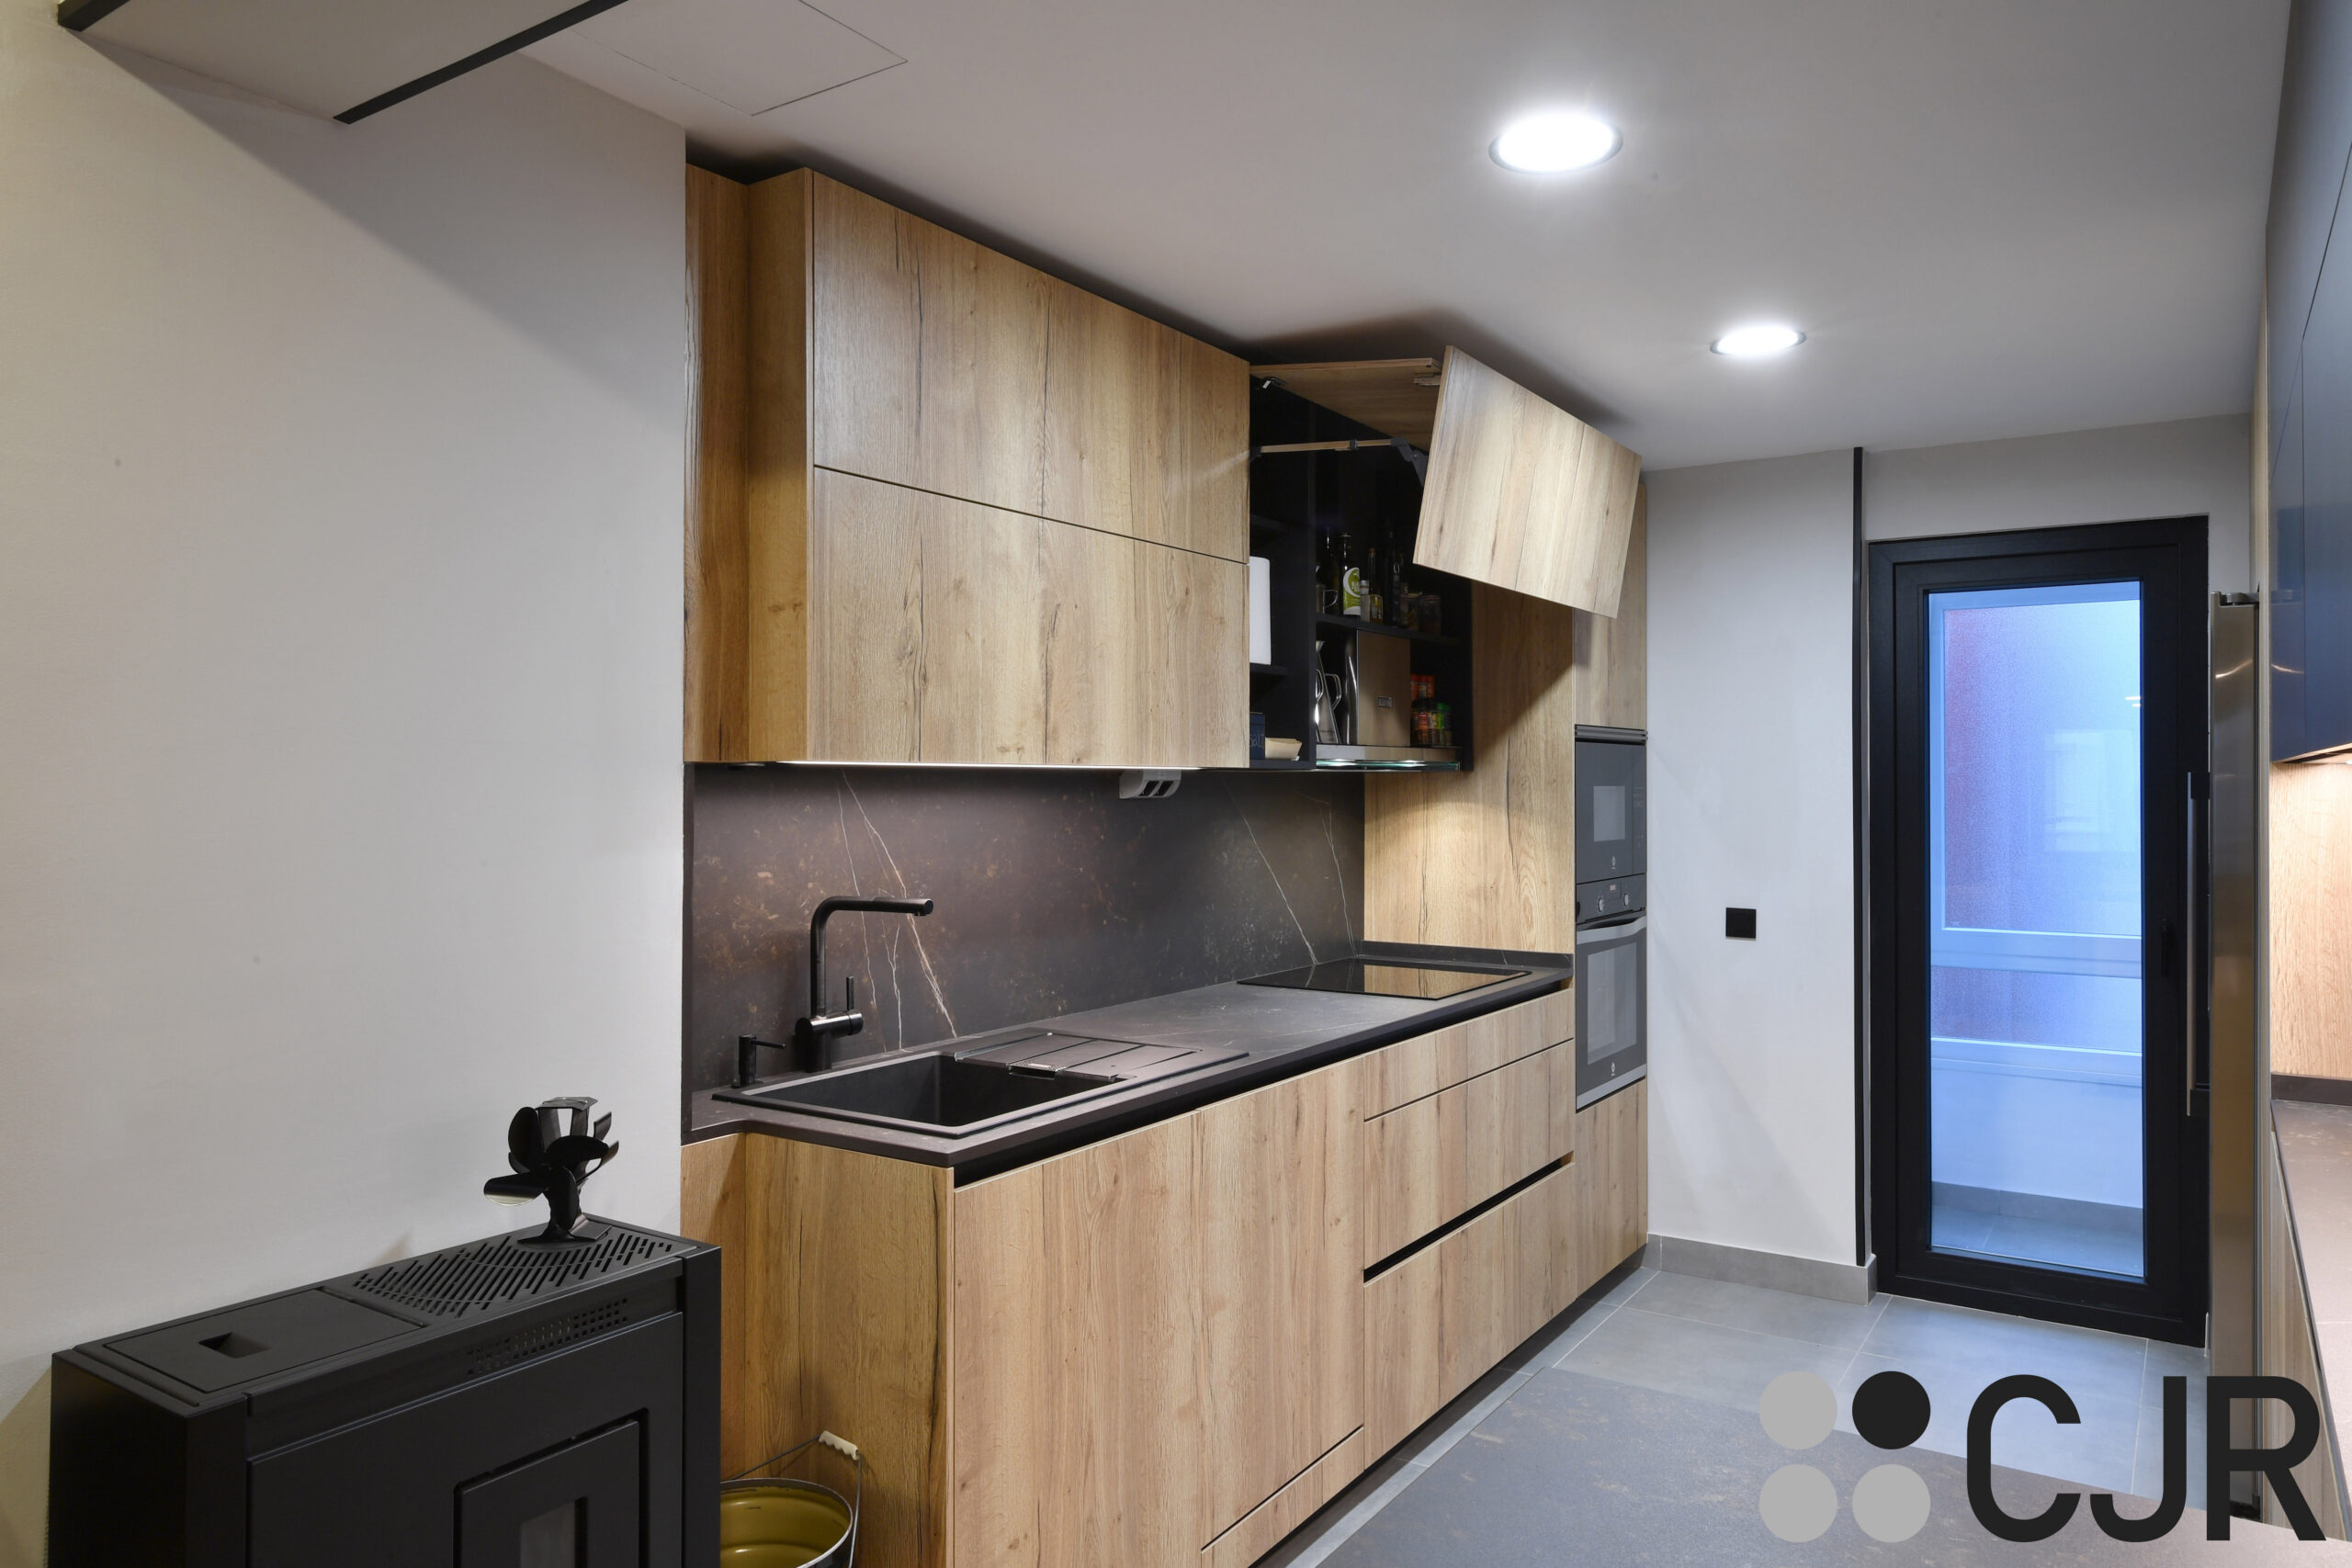 muebles altos de cocina en madera con el interior en negro cjr